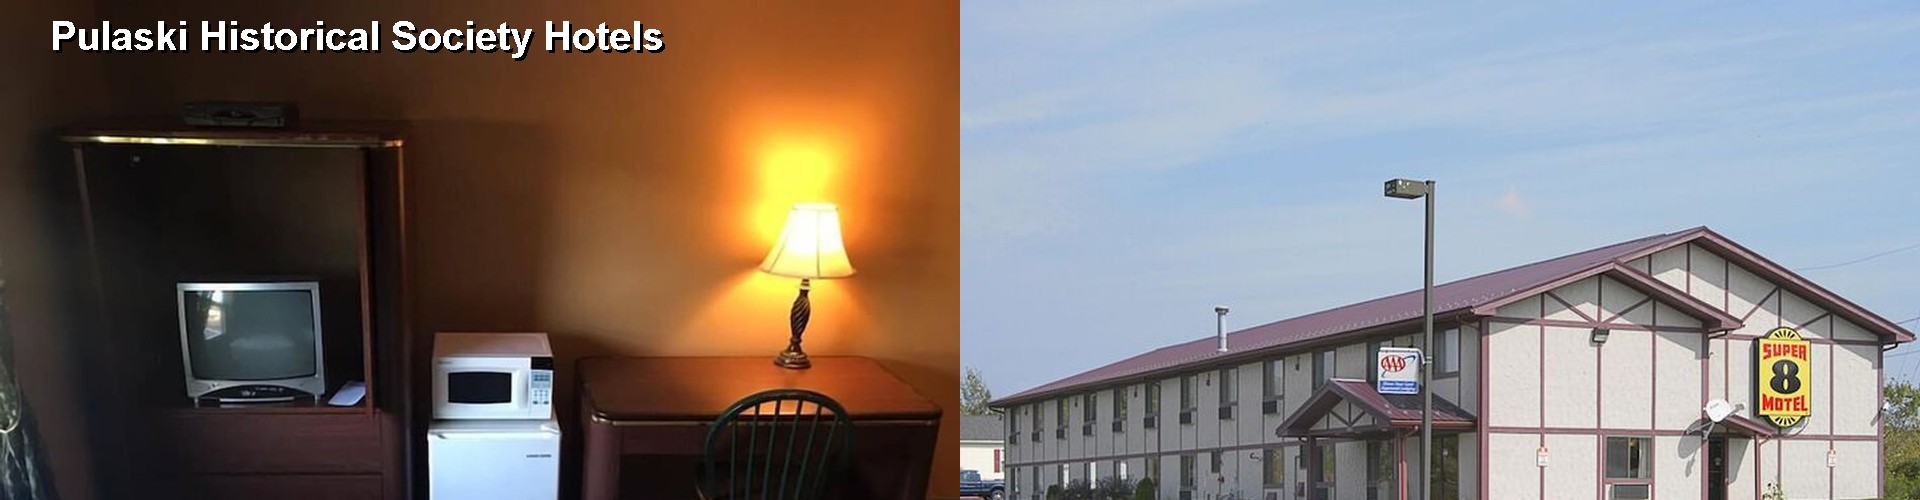 5 Best Hotels near Pulaski Historical Society